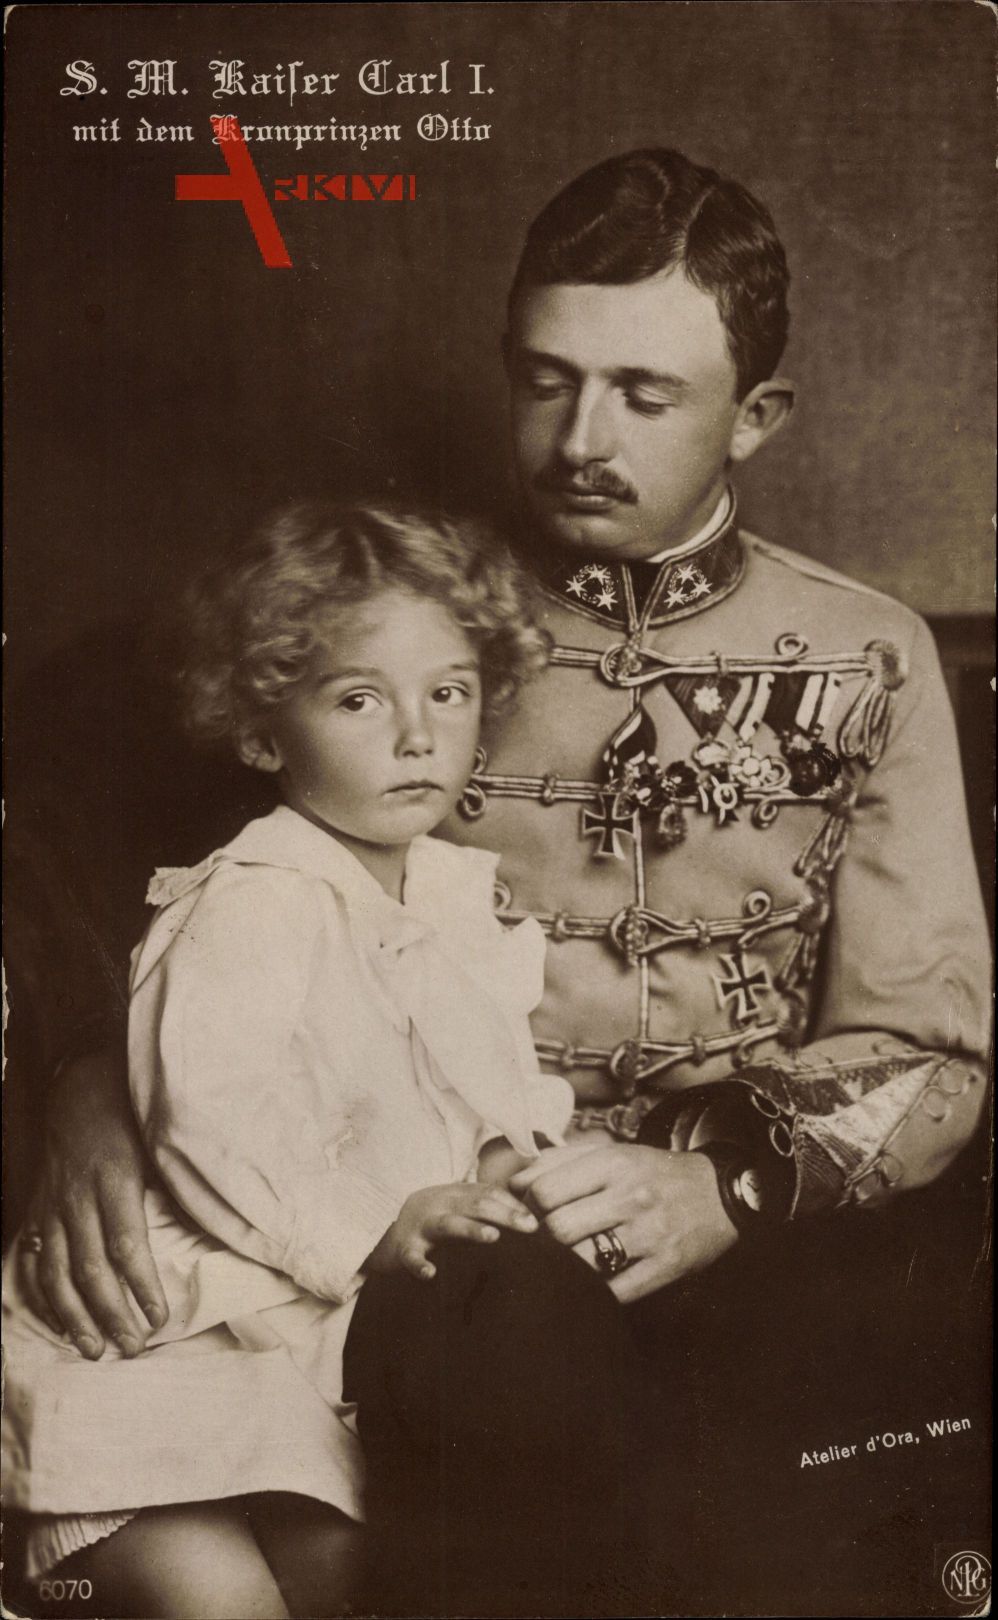 S.M. Kaiser Karl I. von Österreich, Kronprinz Otto, NPG 6070